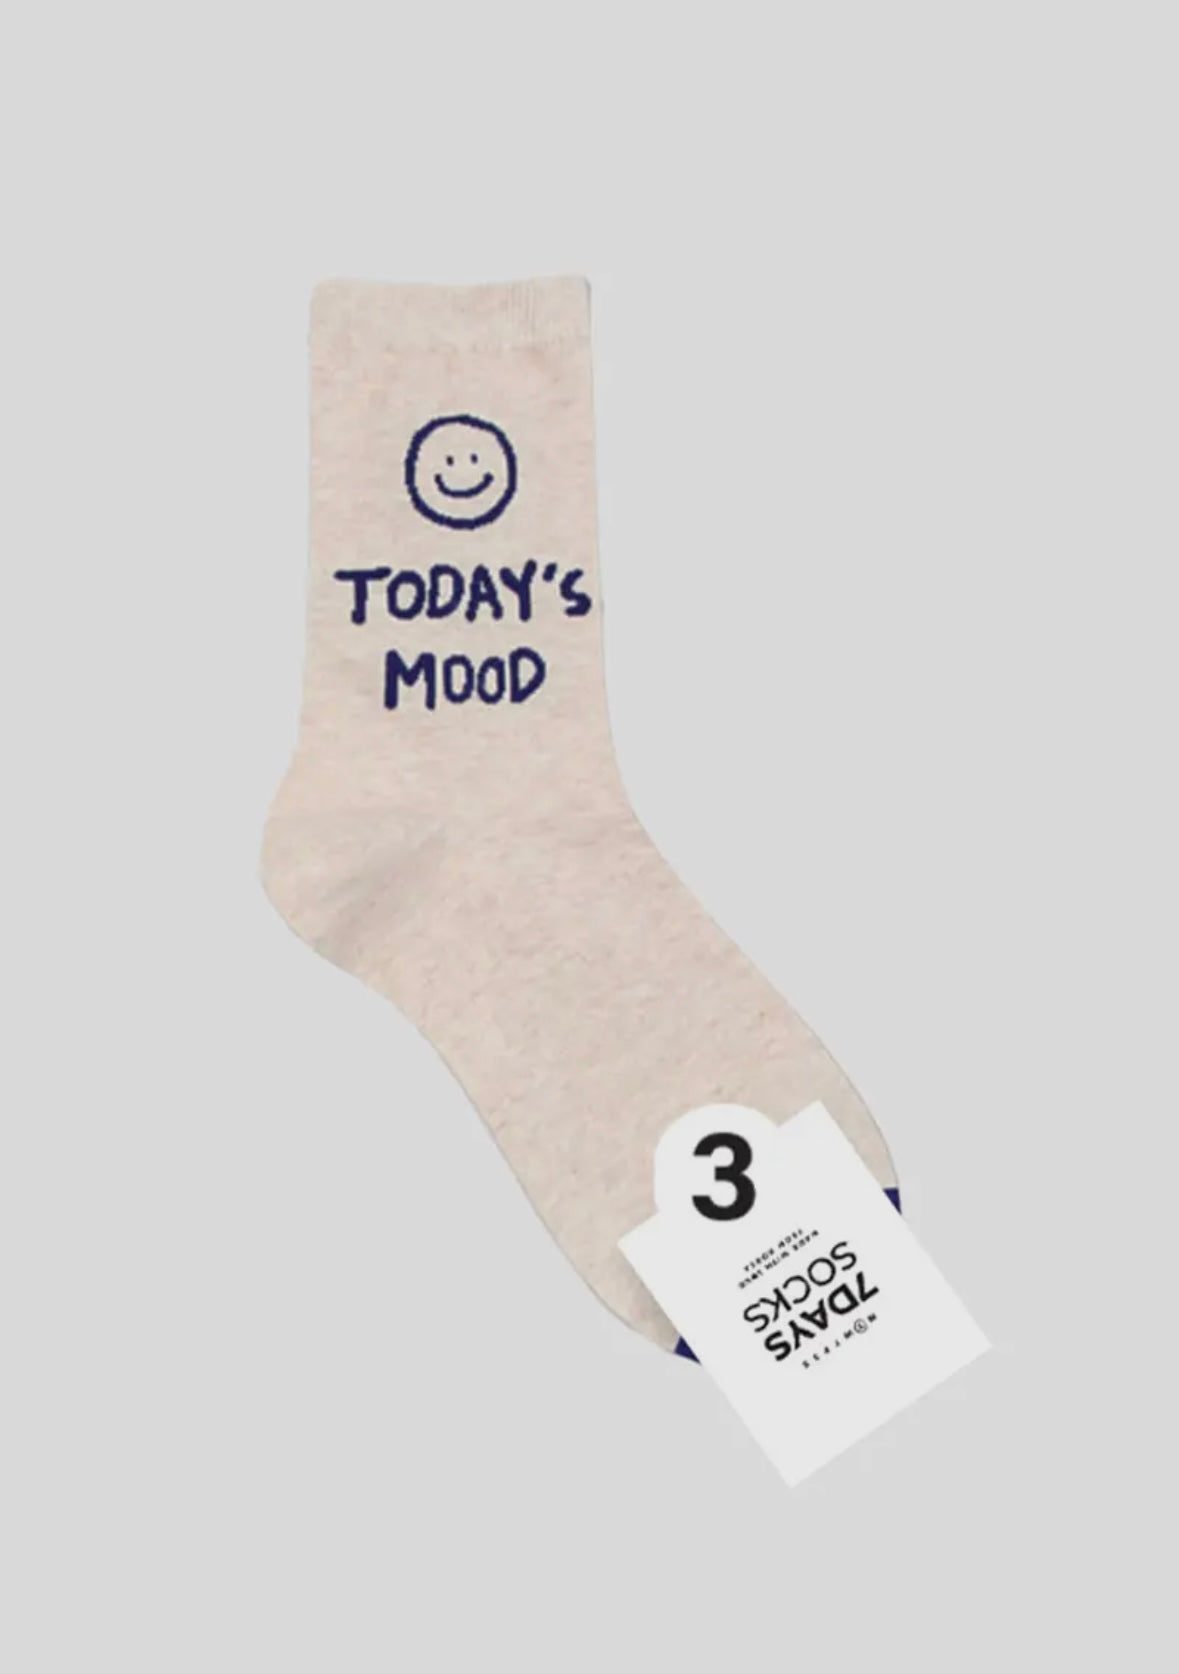 7 day smile crew socks